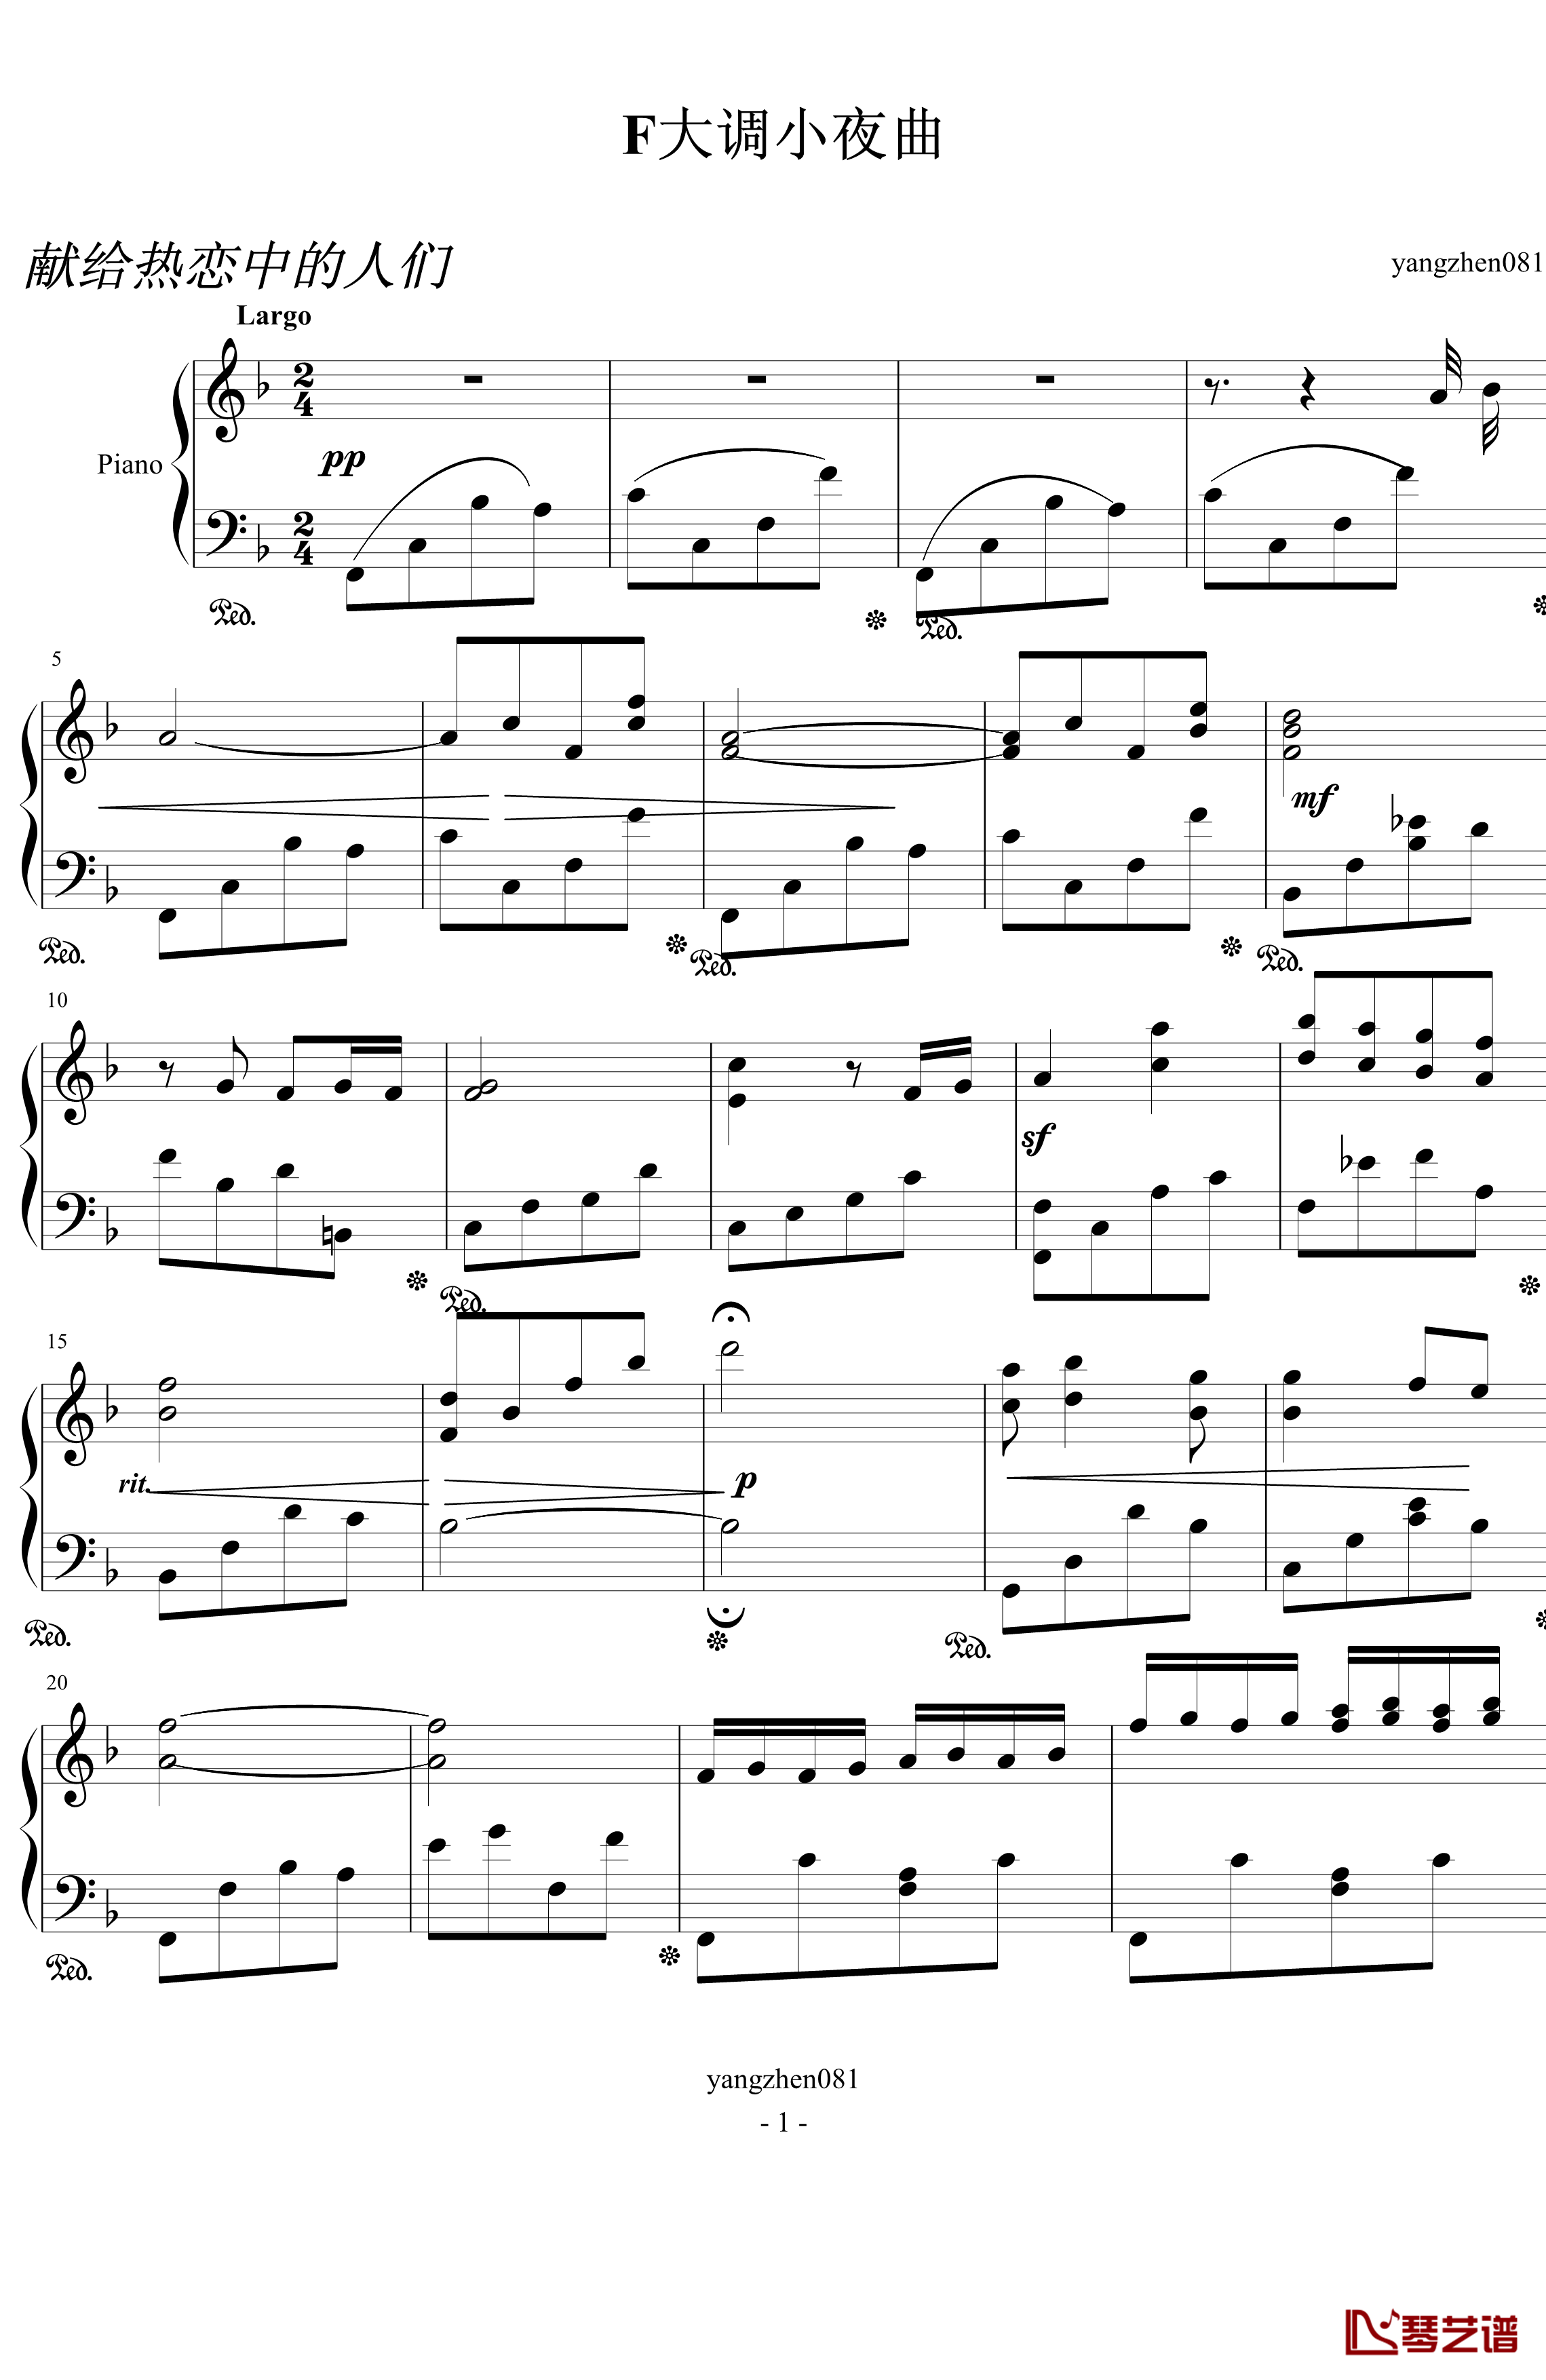 F大调小夜曲钢琴谱-yangzhen0811